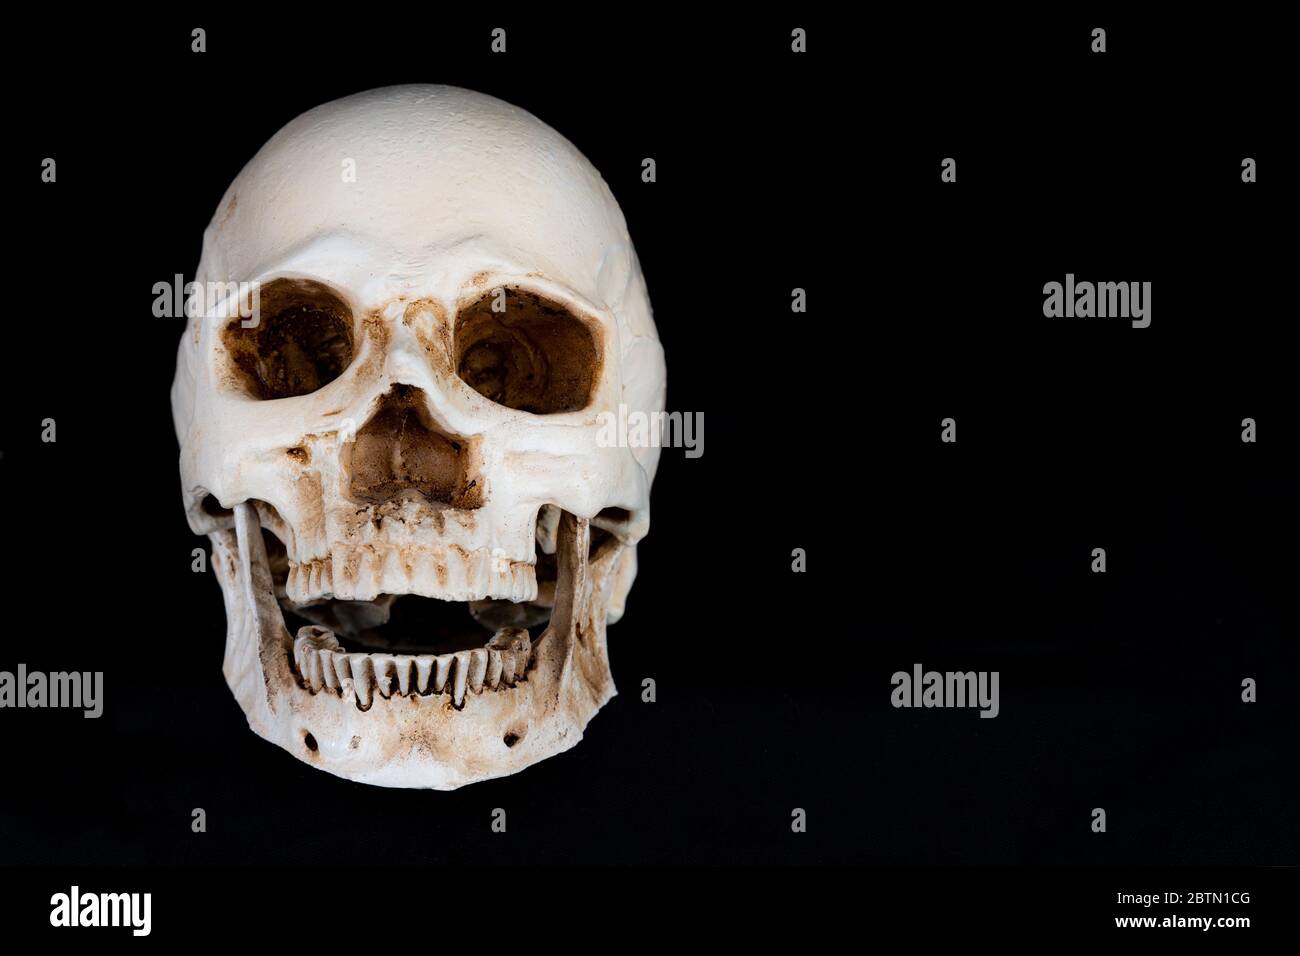 Un crâne humain qui s'étale directement au spectateur. La mâchoire est légèrement ouverte. Isolé sur un fond noir. Banque D'Images